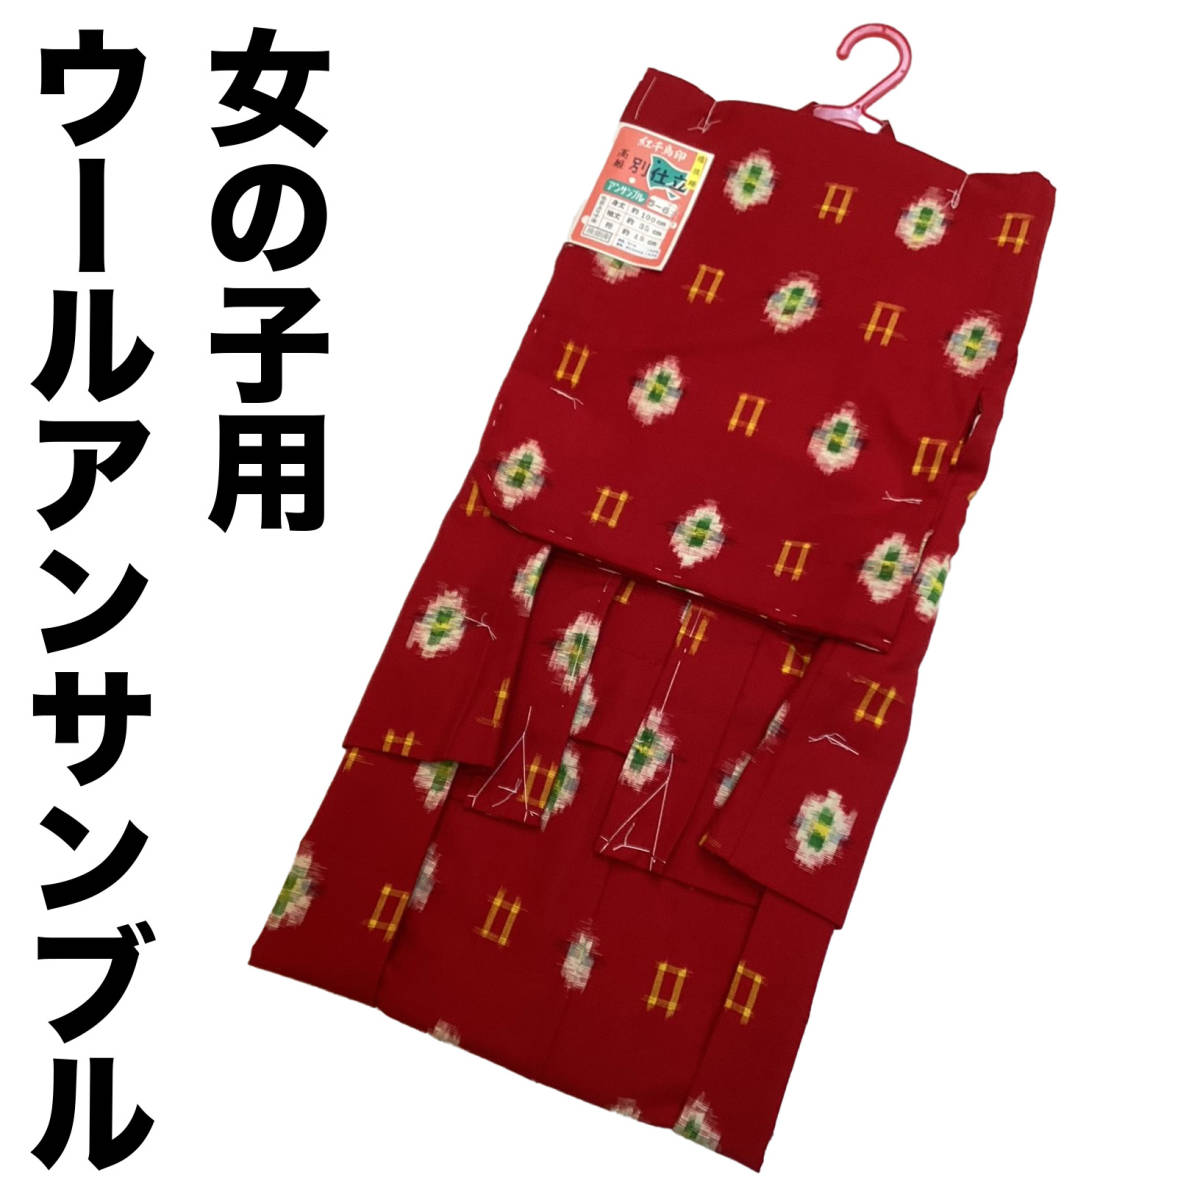  шерсть. кимоно * перо тканый ансамбль kk456 Kids детский 5-6 лет 110 размер красный цвет . рисунок новый товар включая доставку 